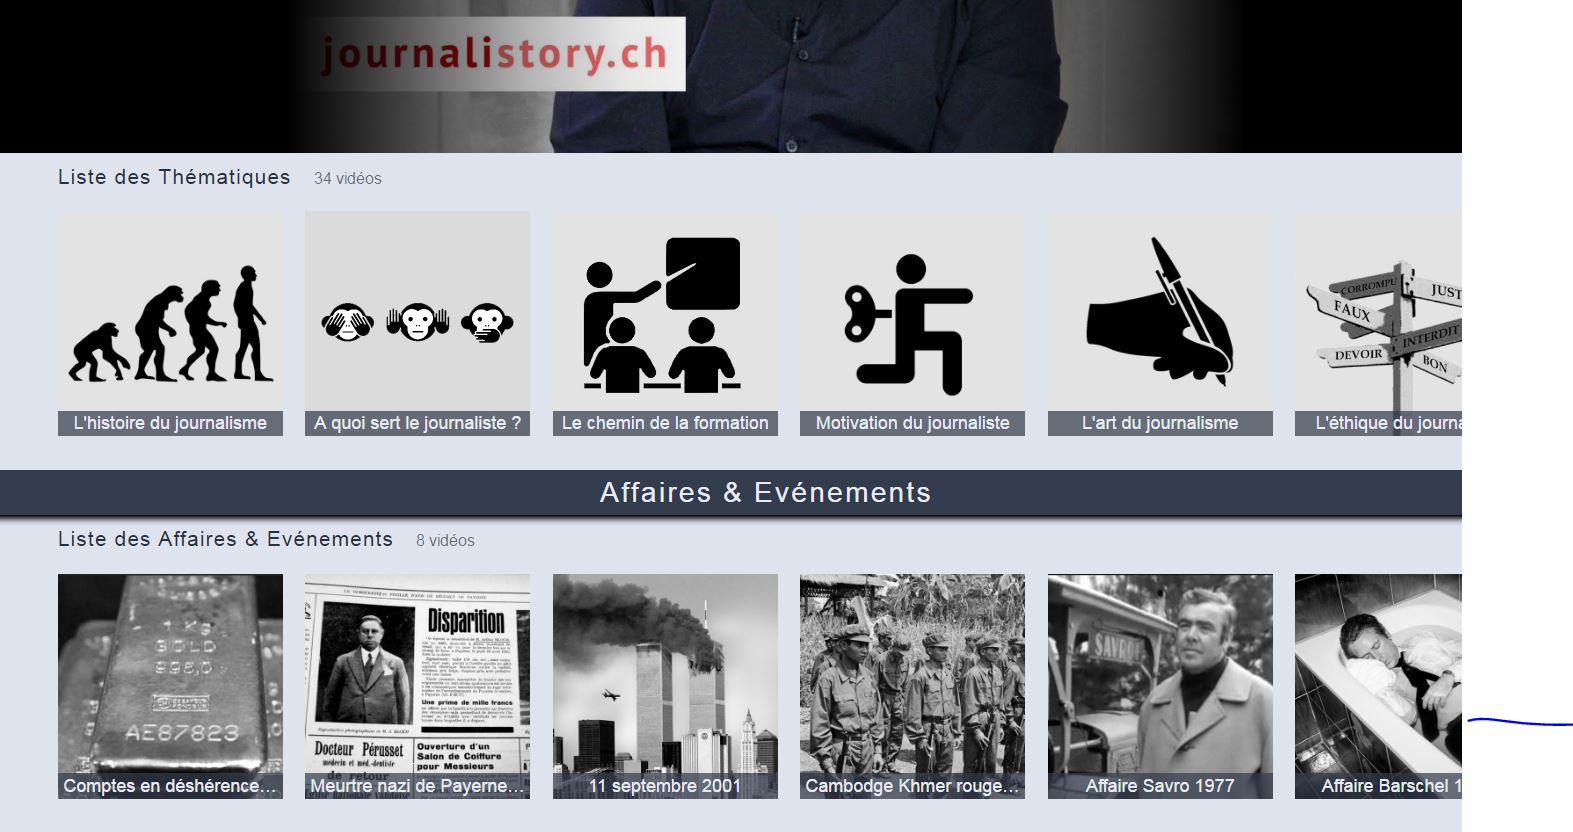 La plateforme journalistory.ch, une base de données transmédias du journalisme suisse.